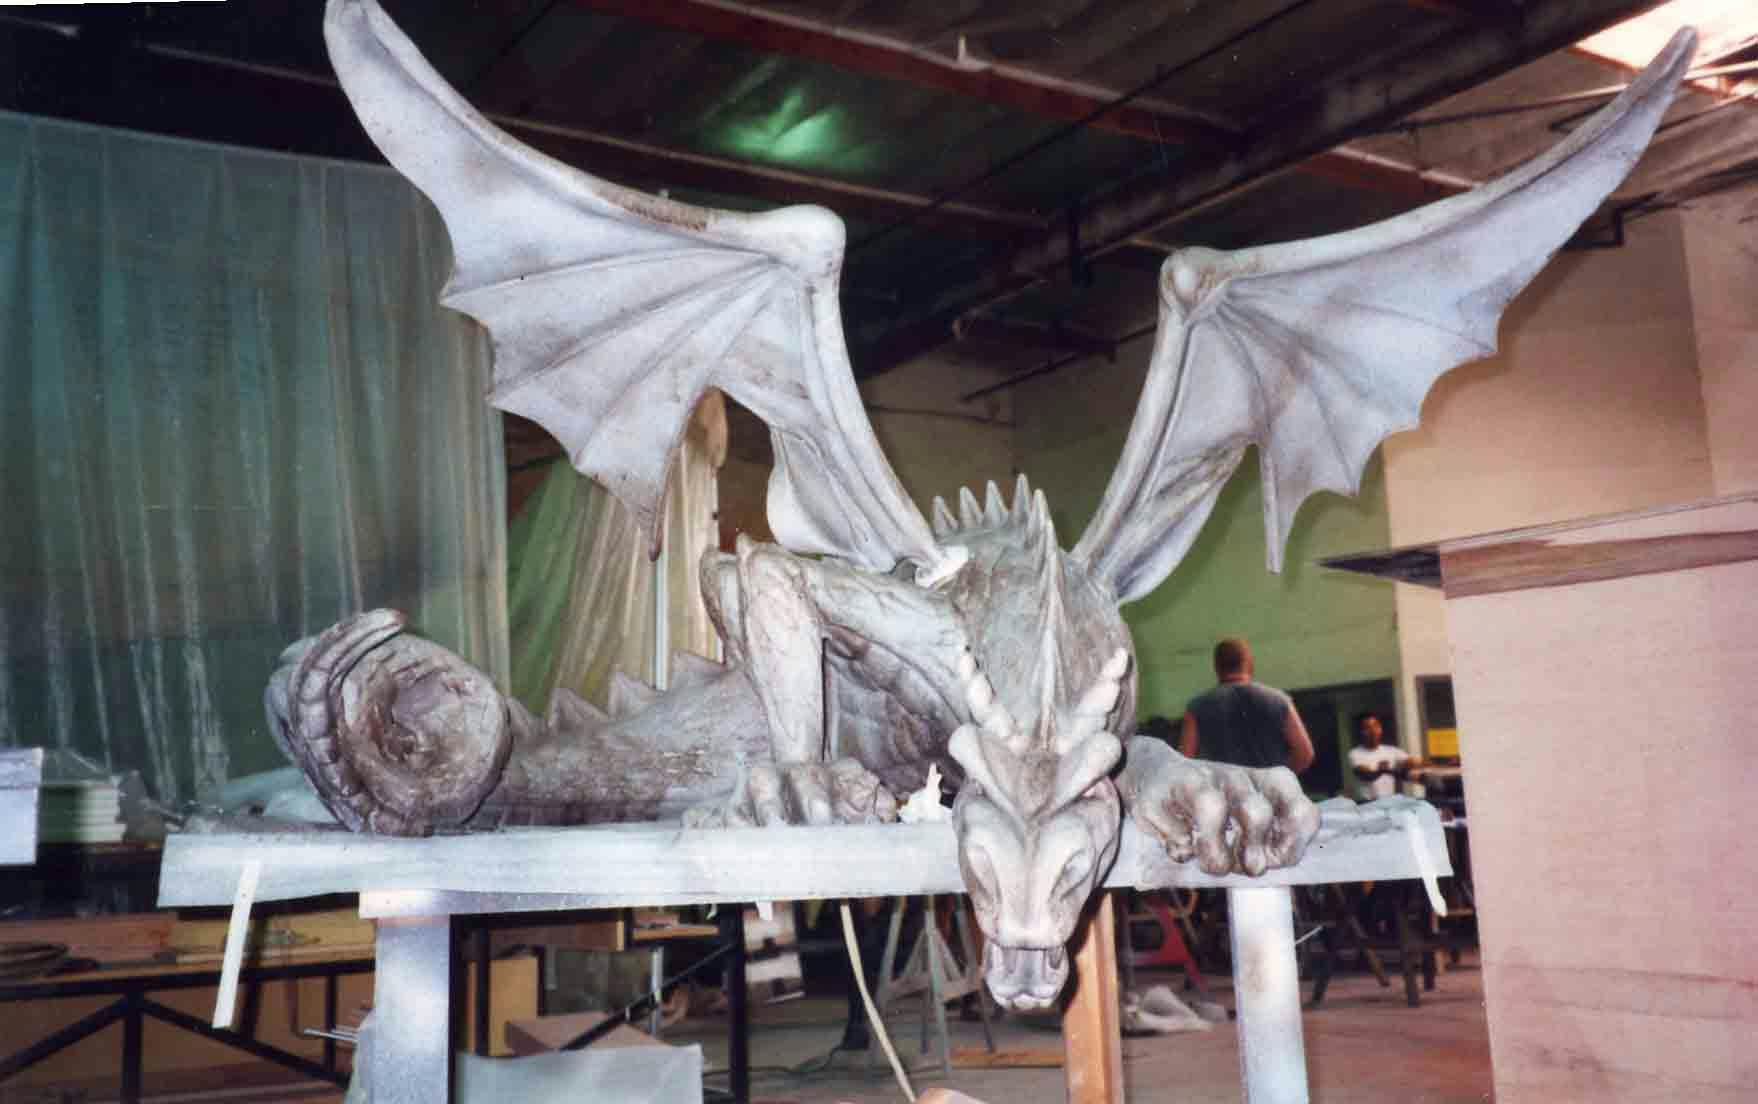 Sculpture of a dragon.